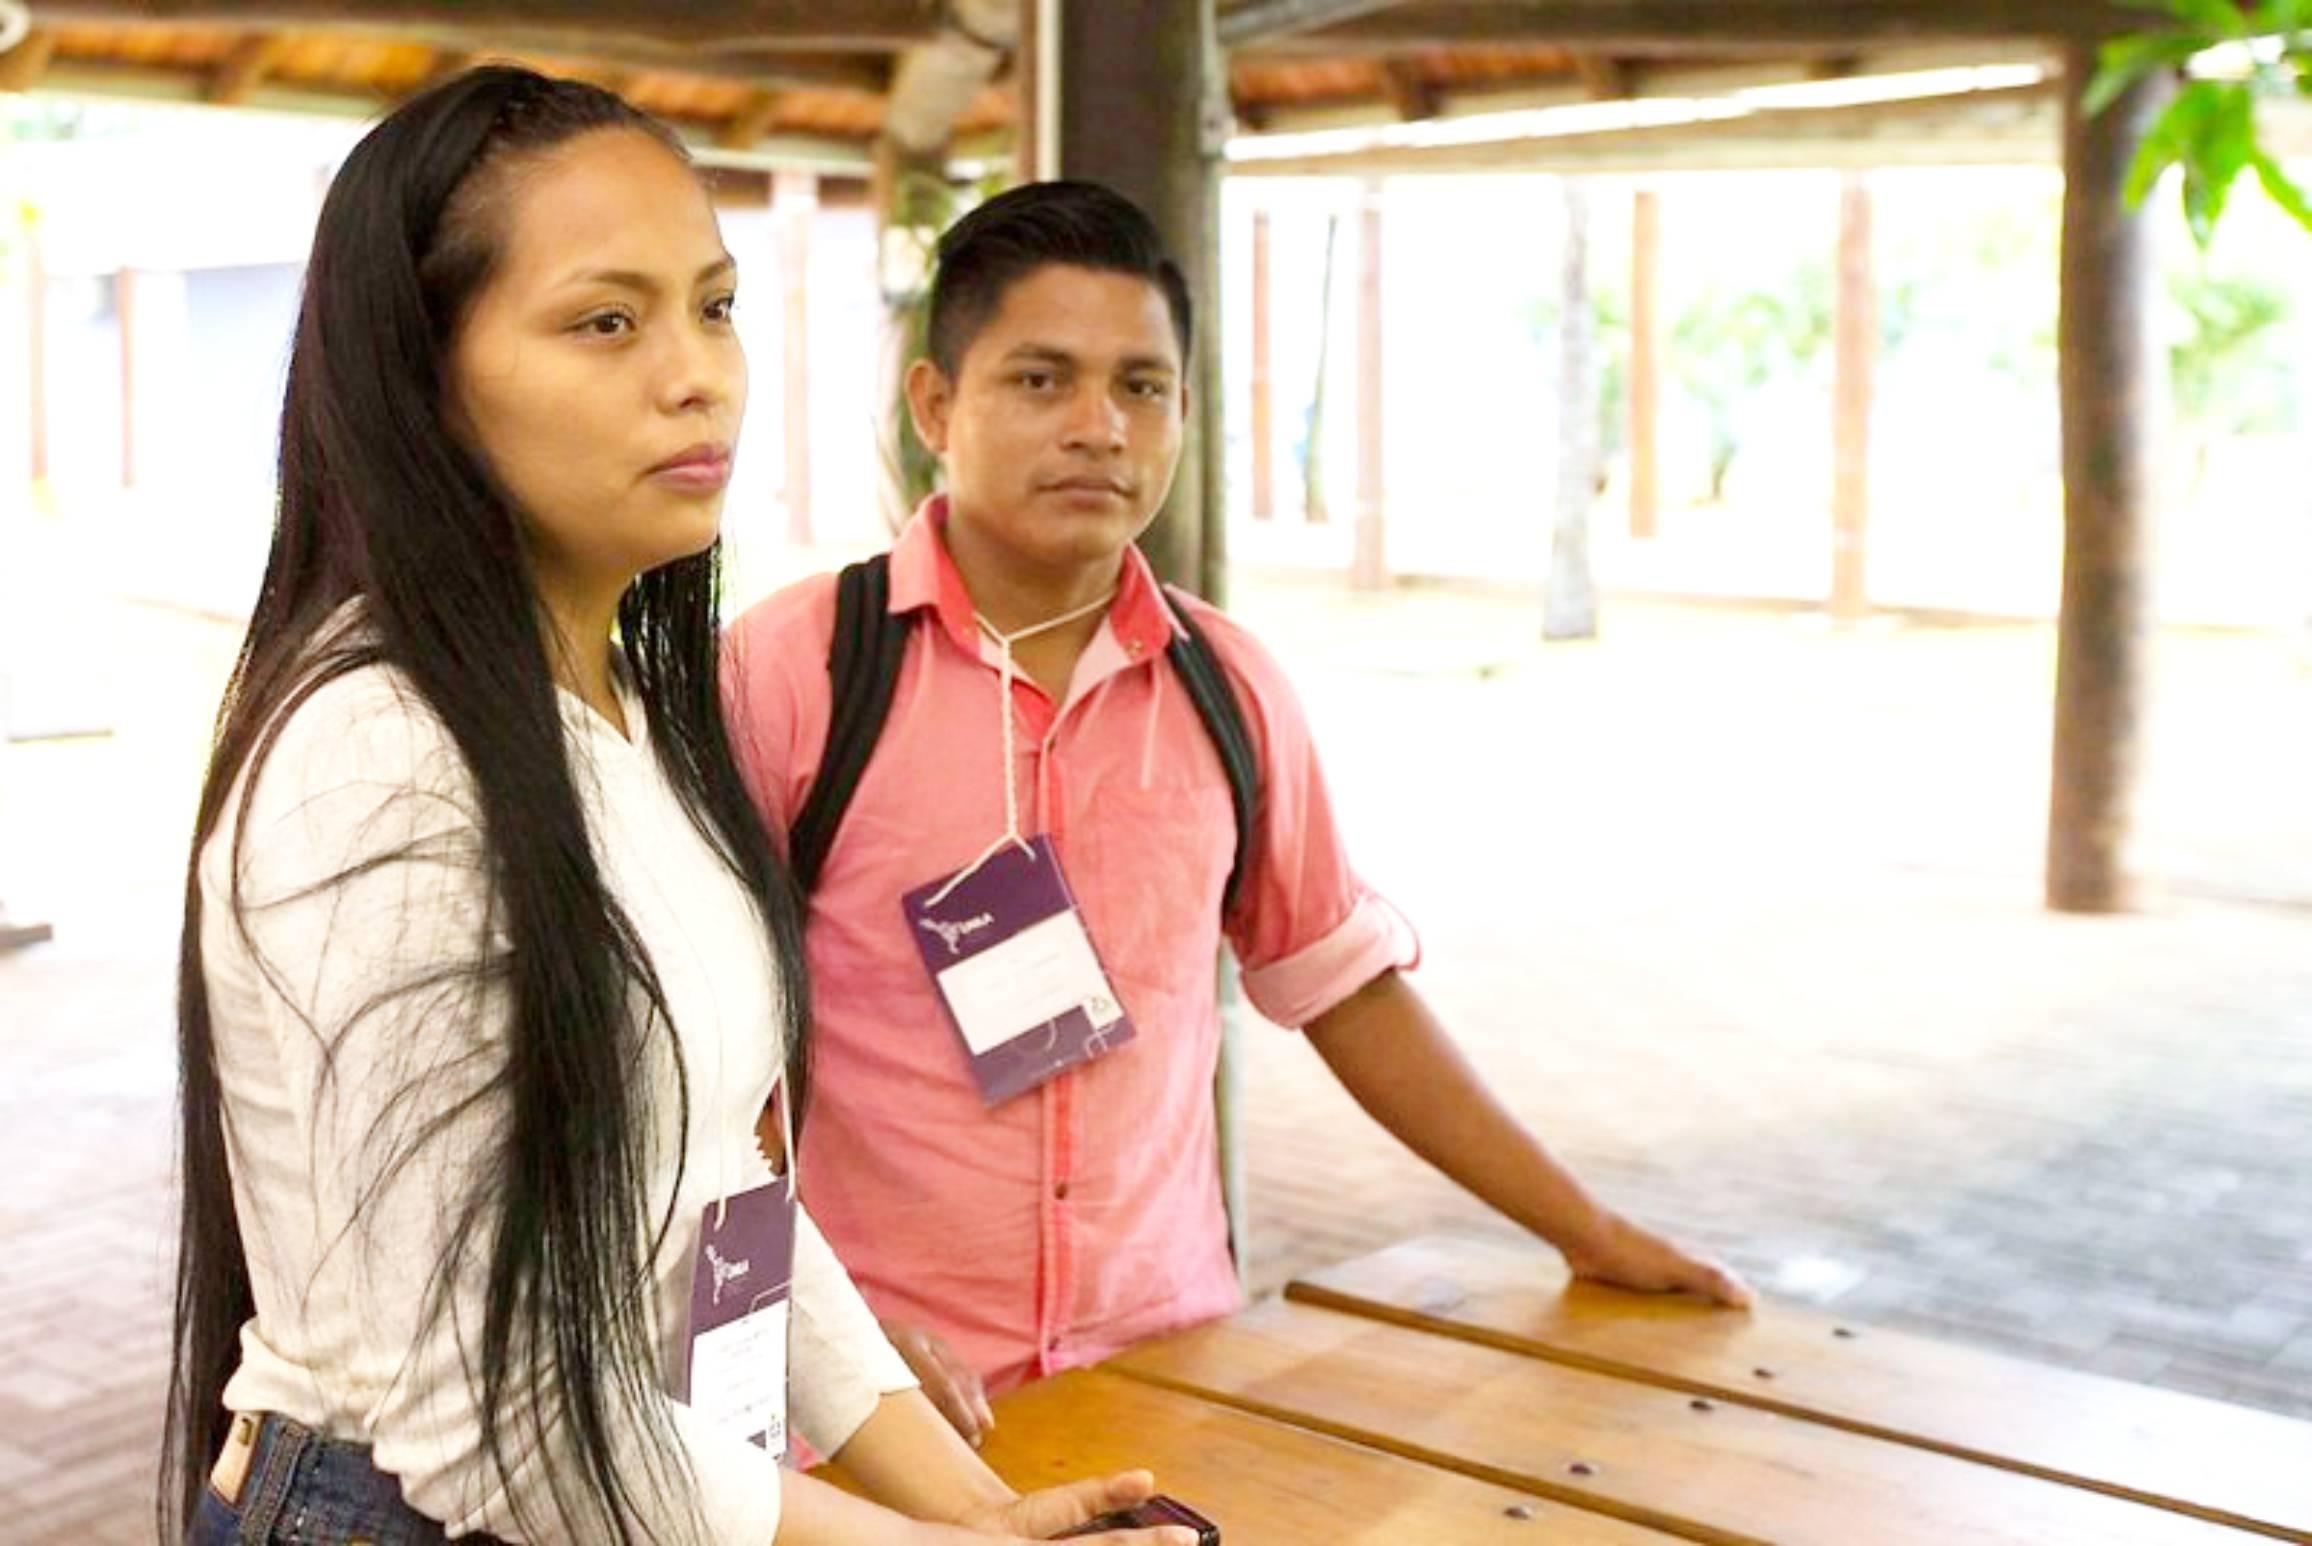 UNILA oferta vagas para estudantes indígenas em 29 cursos de graduação